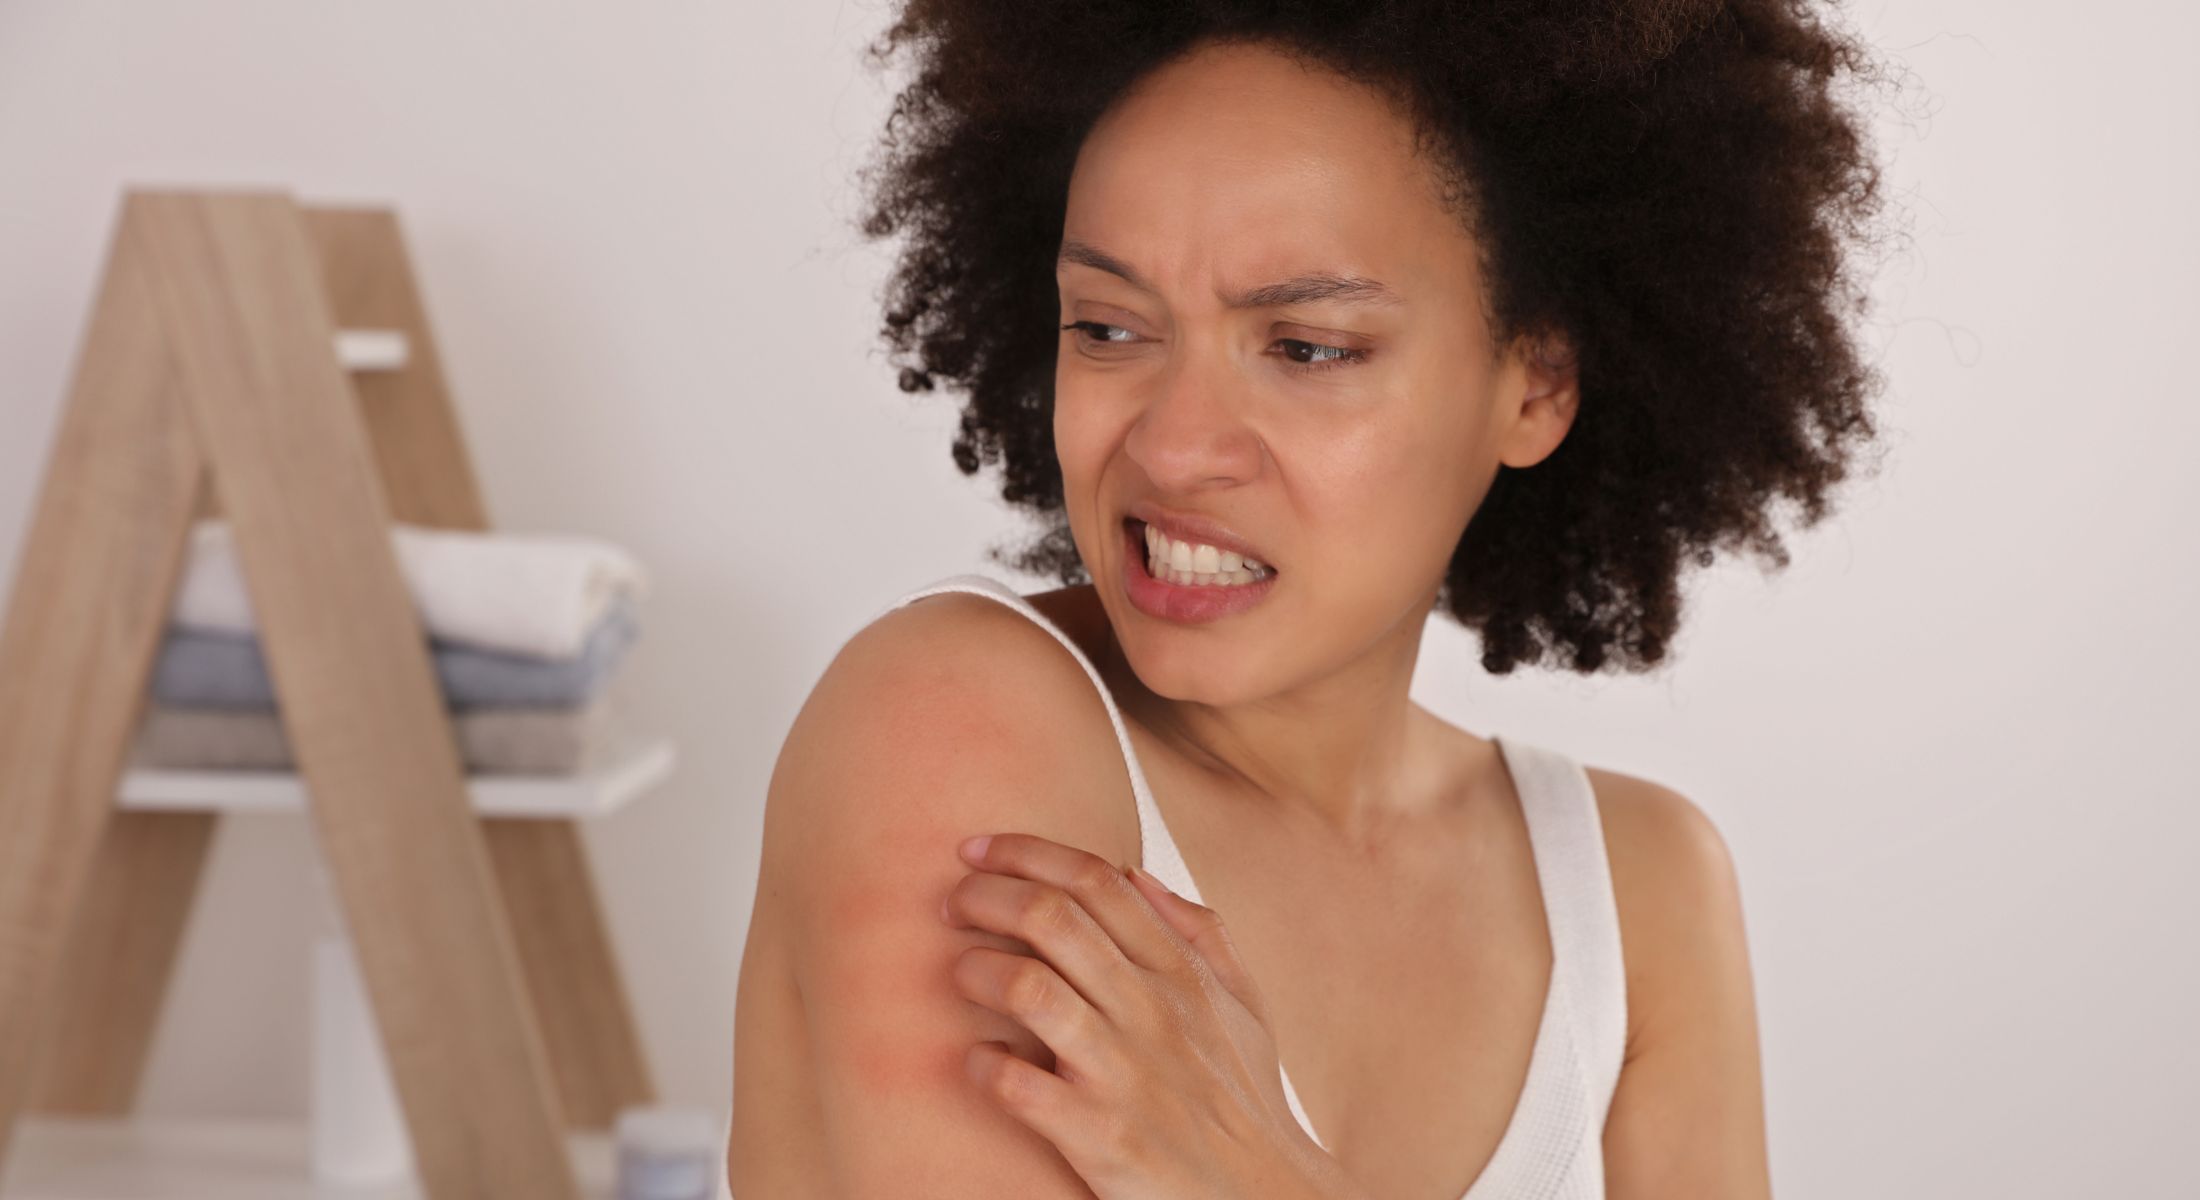 Alergias de pele - entenda as diferenças de cada uma e como tratá-las